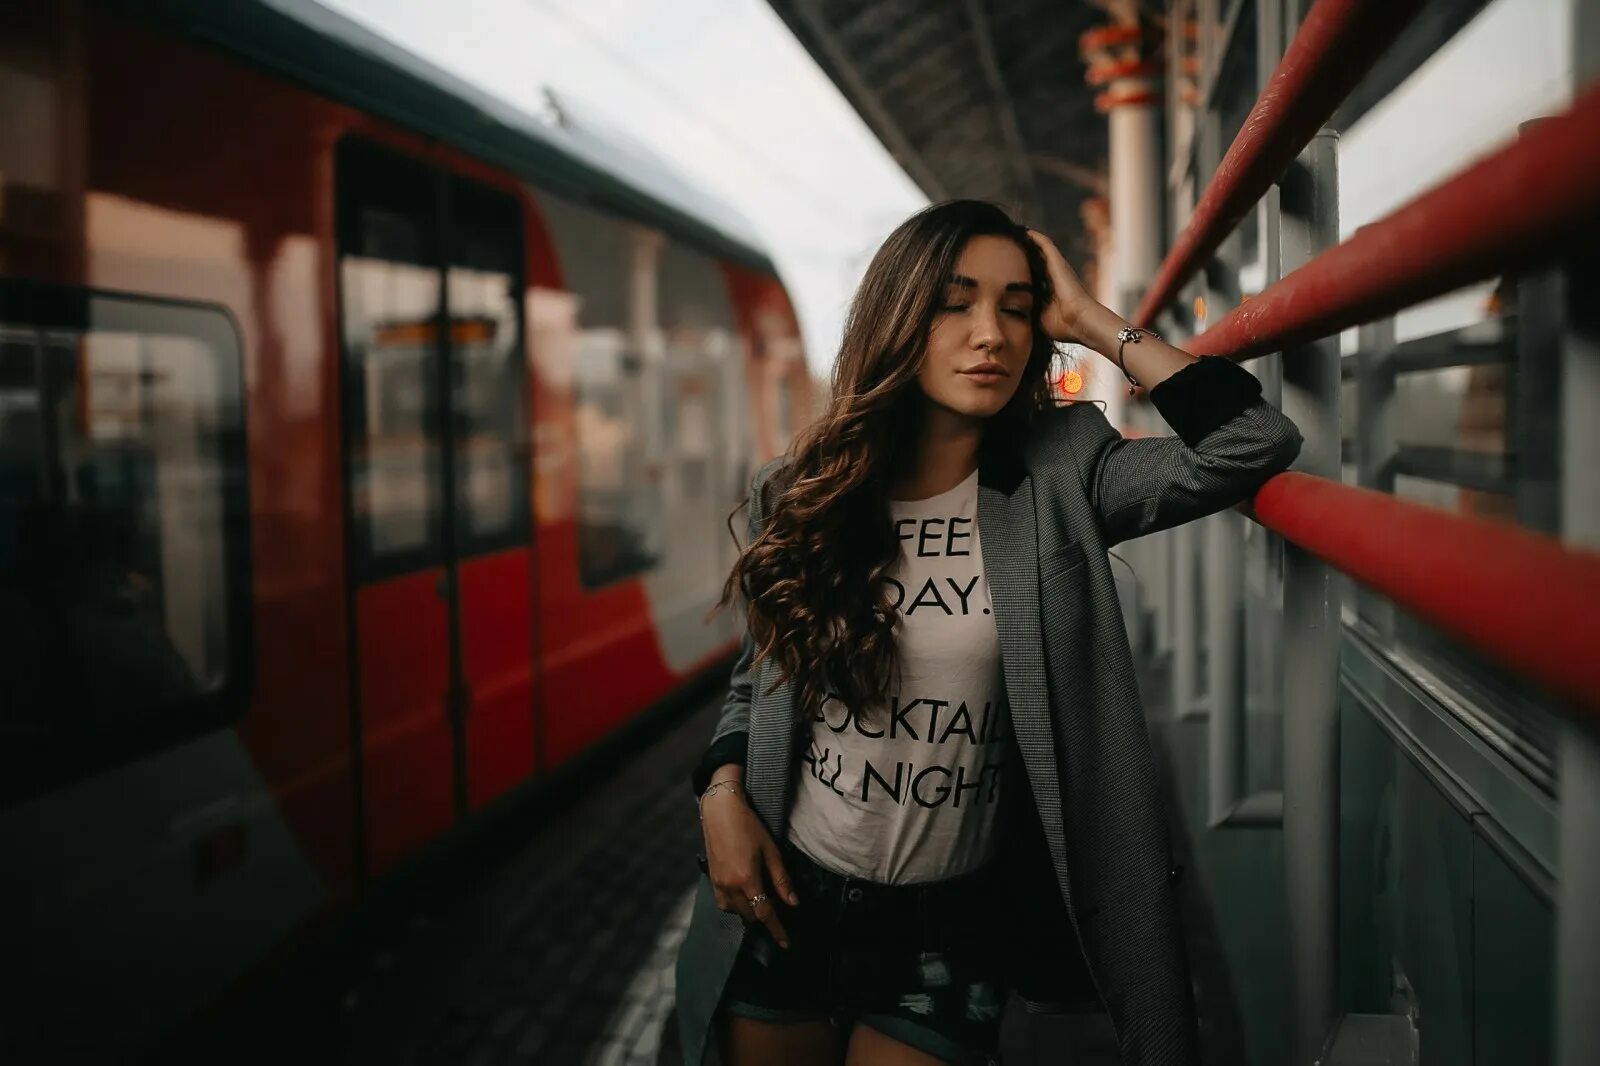 Deep extended mix. Train Station woman. Девушки в шортах в поезде. Фото смуглых поезд. Девушка в поезде в шортиках.